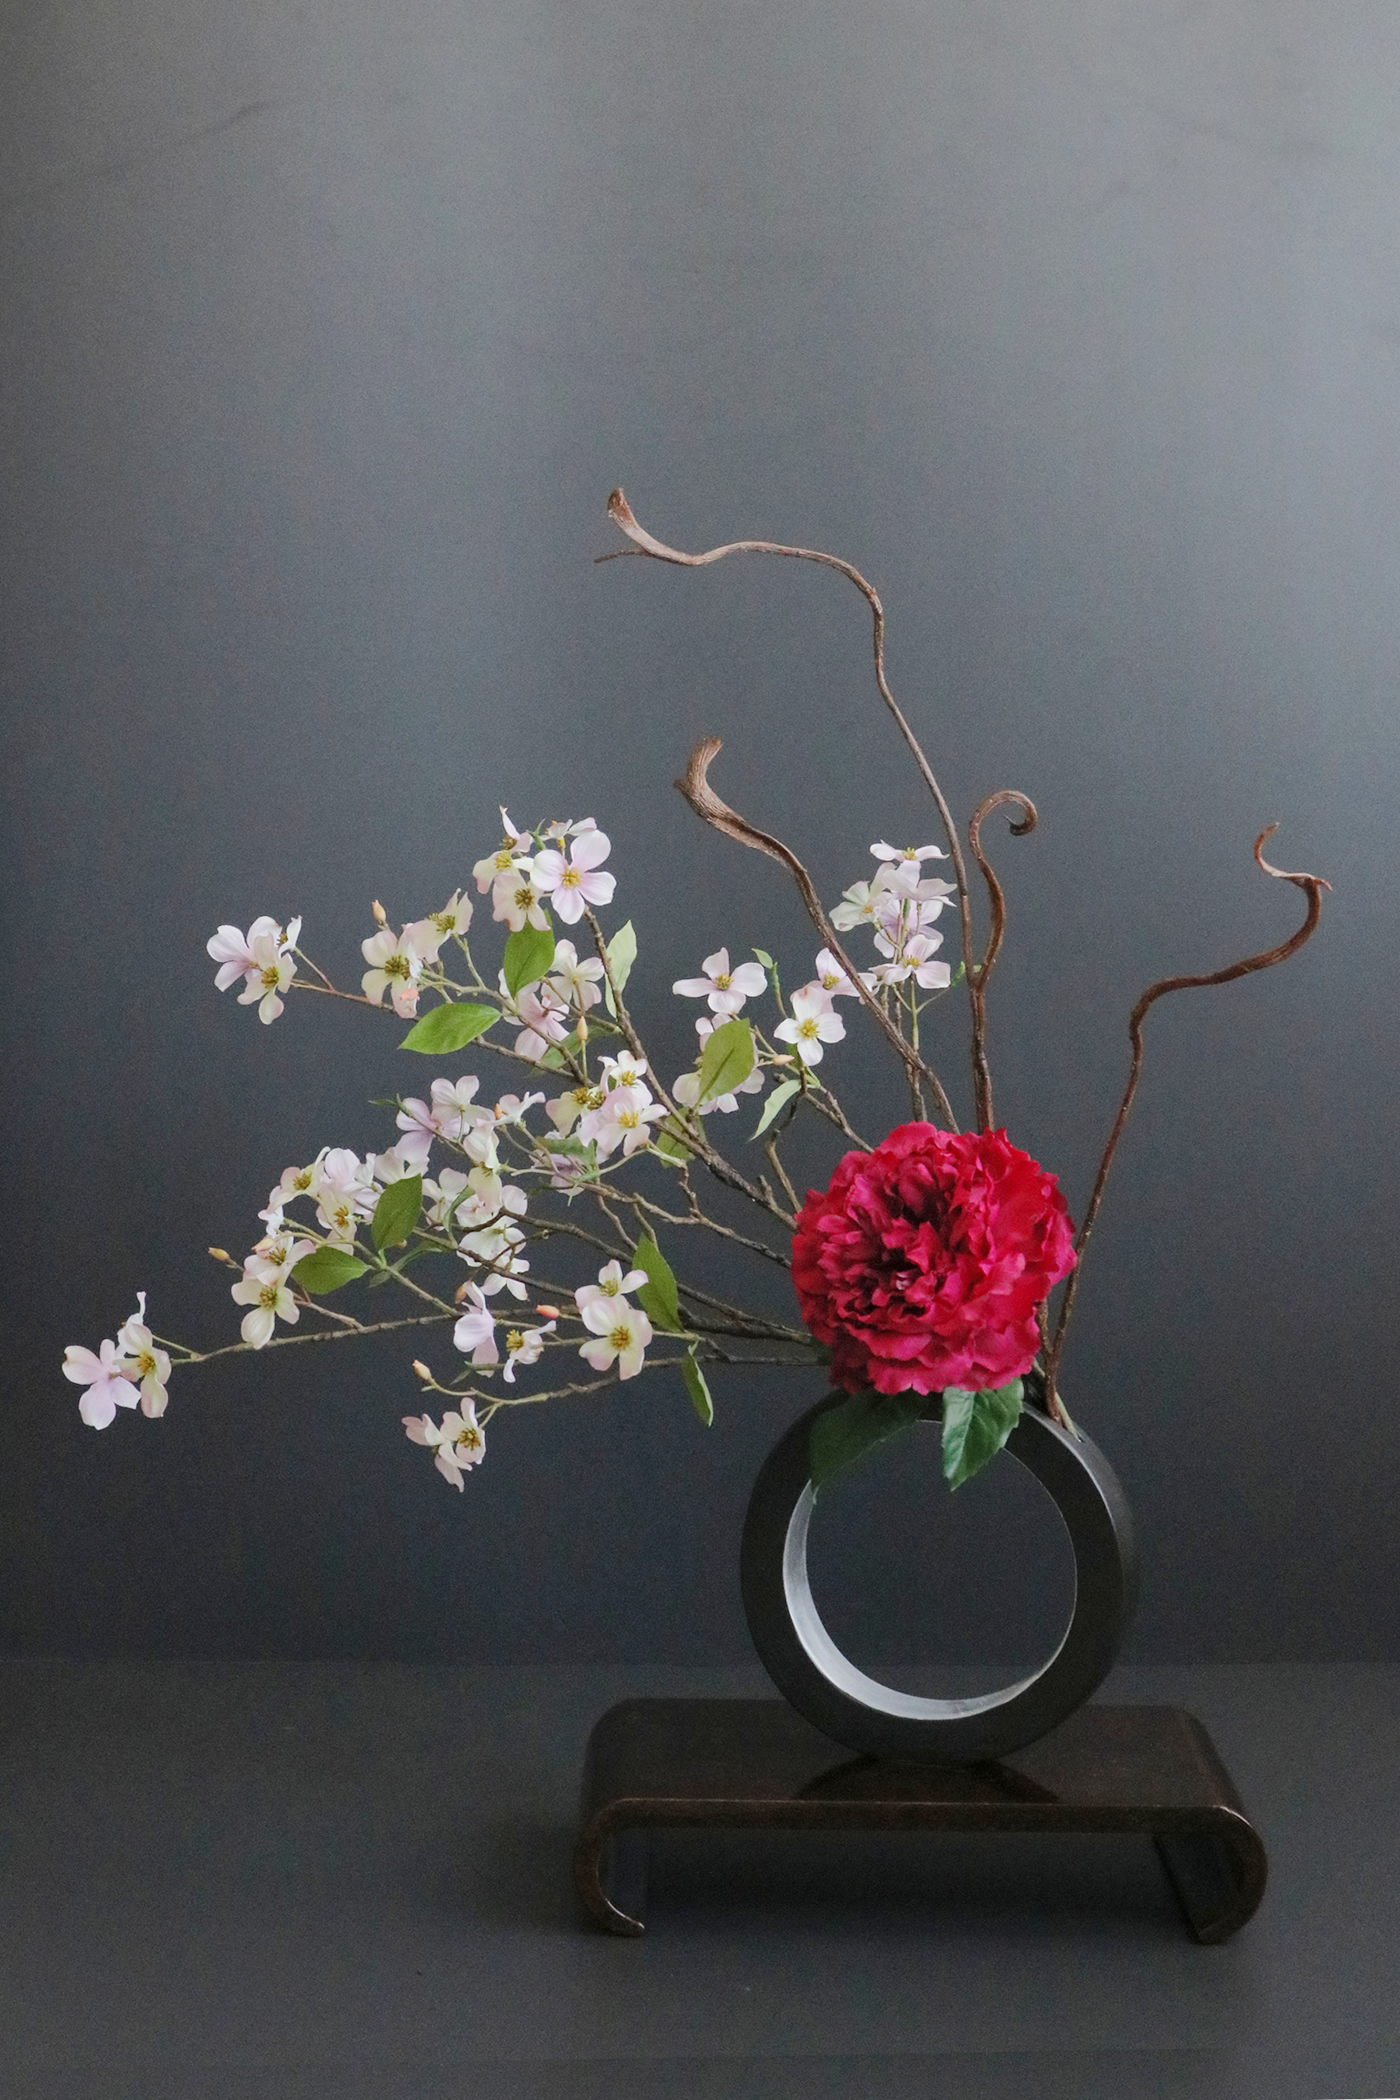 ワインレッド芍薬 和風スタイル 造花 アートフラワー Akanbi